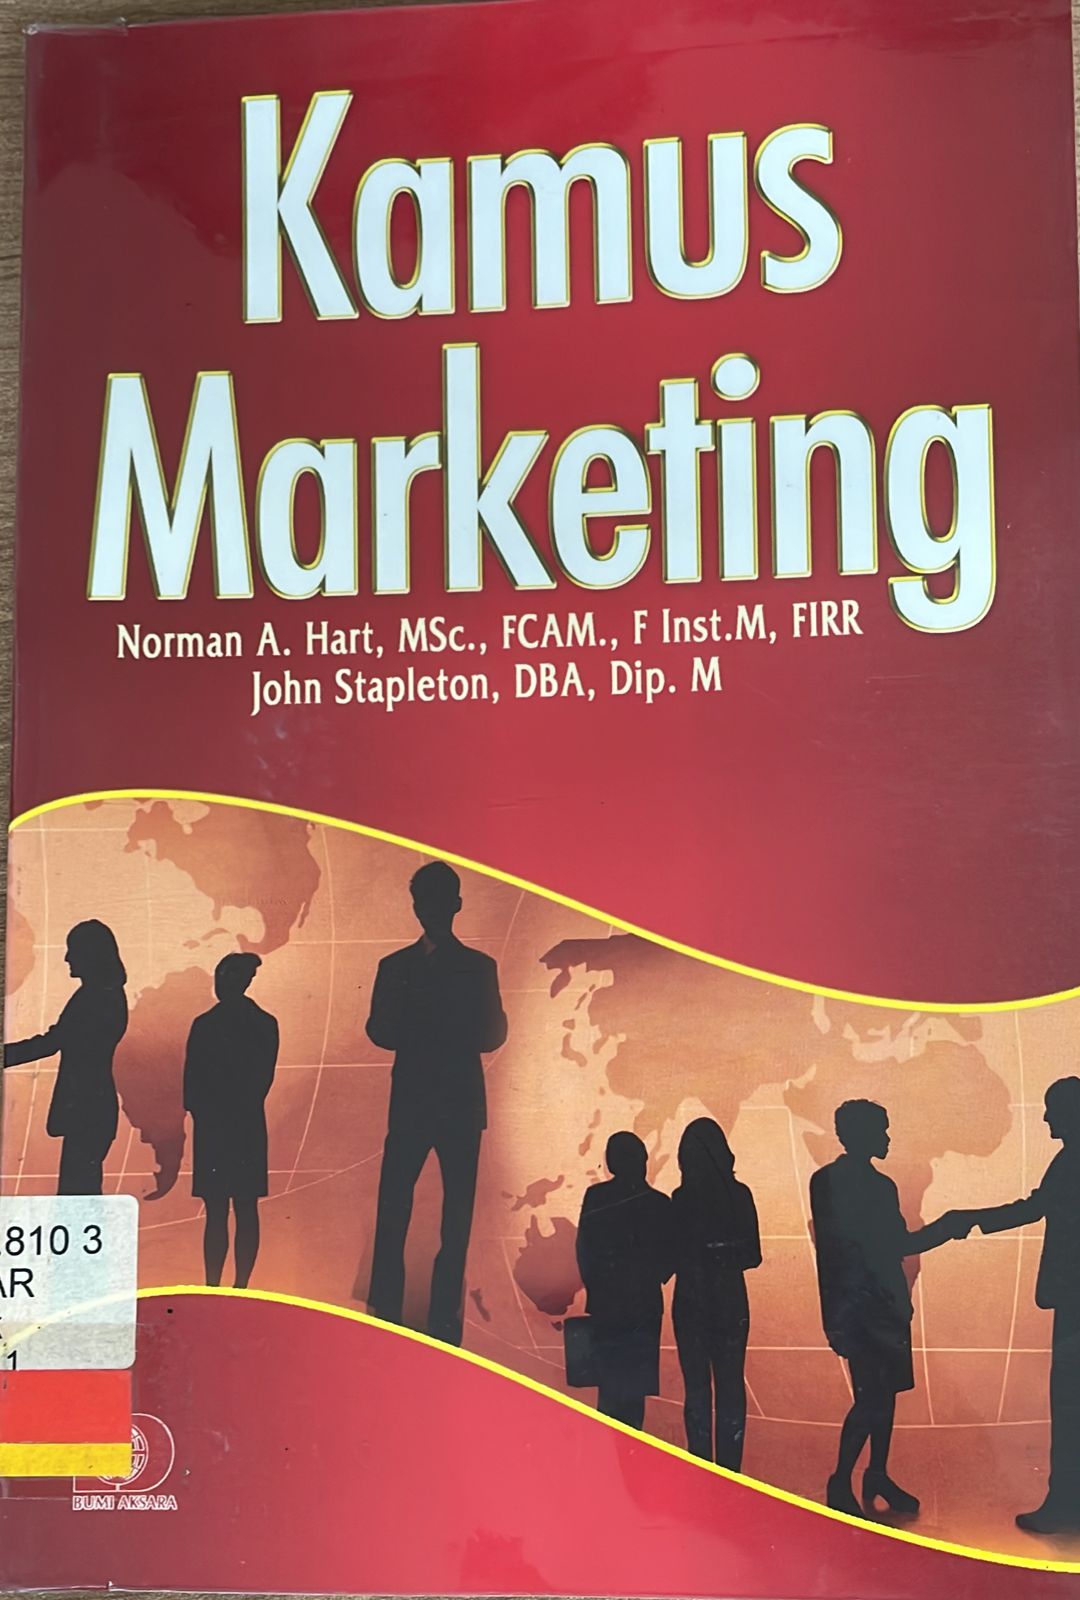 Kamus marketing :  Glossary of Marketing Terms